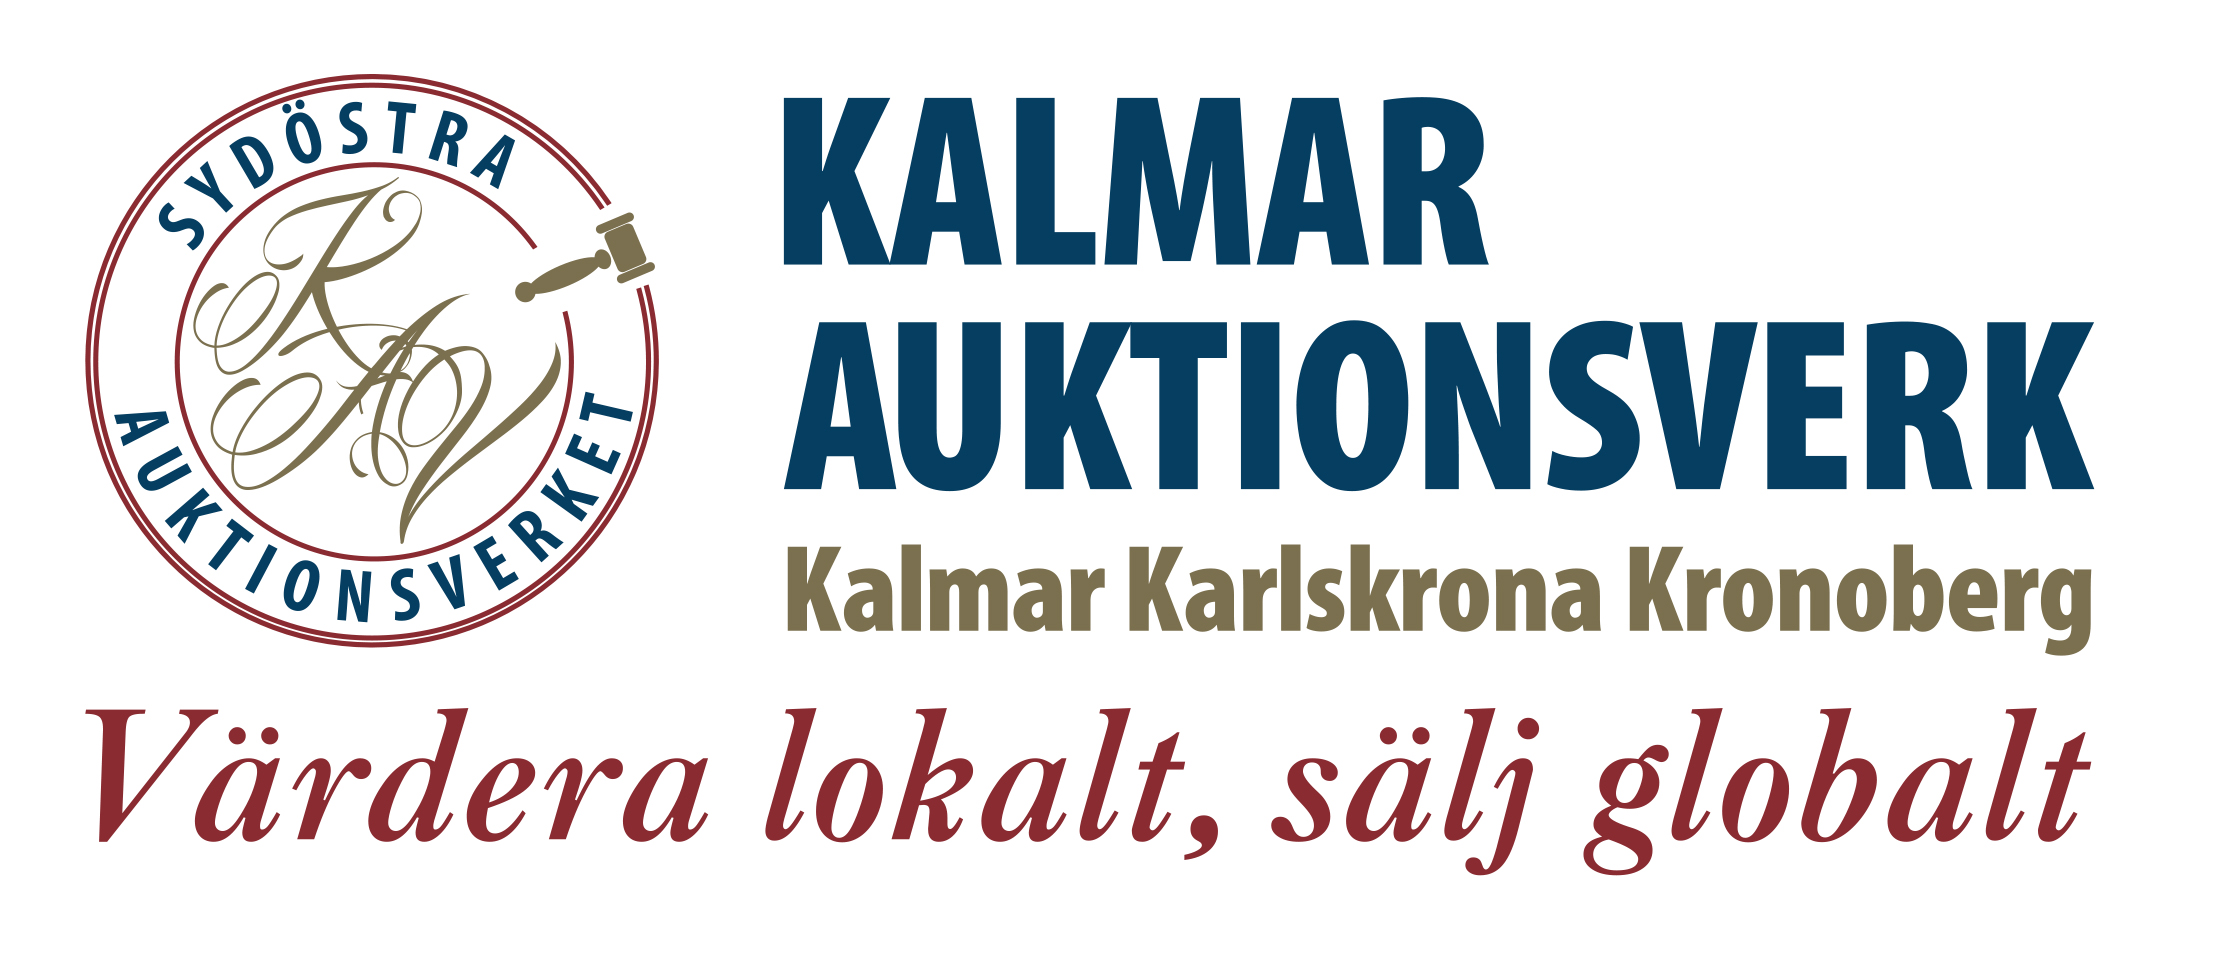 Auktionskammare, Dödsbo hantering, Dödsbo värdering, Kvalitetsauktioner, Online auktioner Kalmar, Öland, Växjö, Karlskrona – Kalmar Auktionsverk